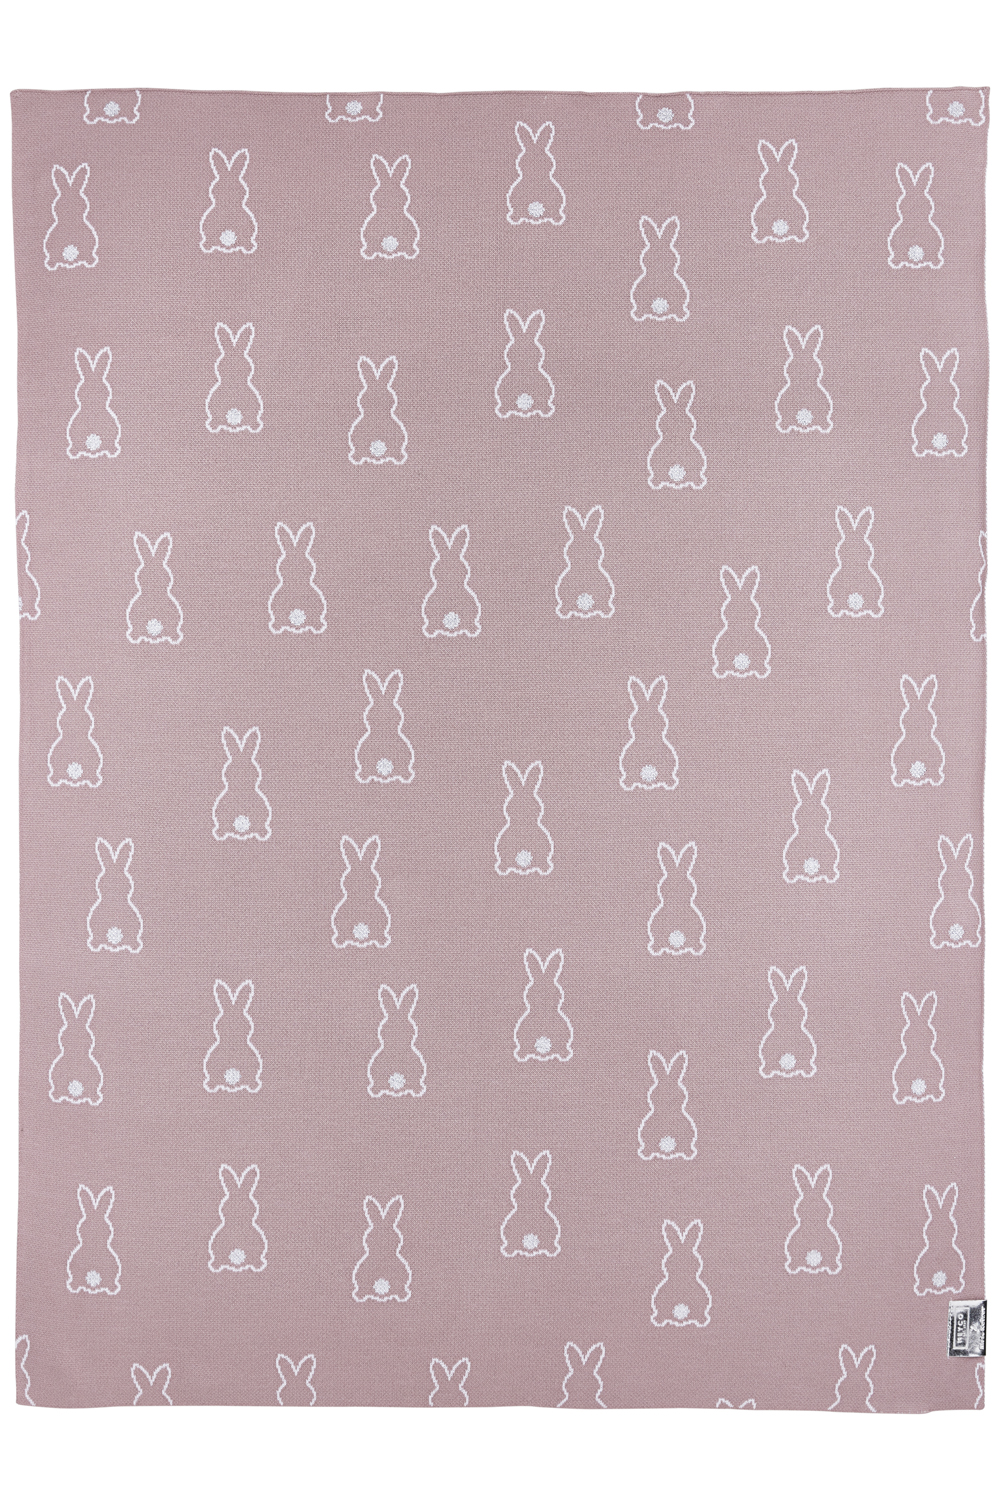 Babydecke groß Rabbit - lilac - 100x150cm